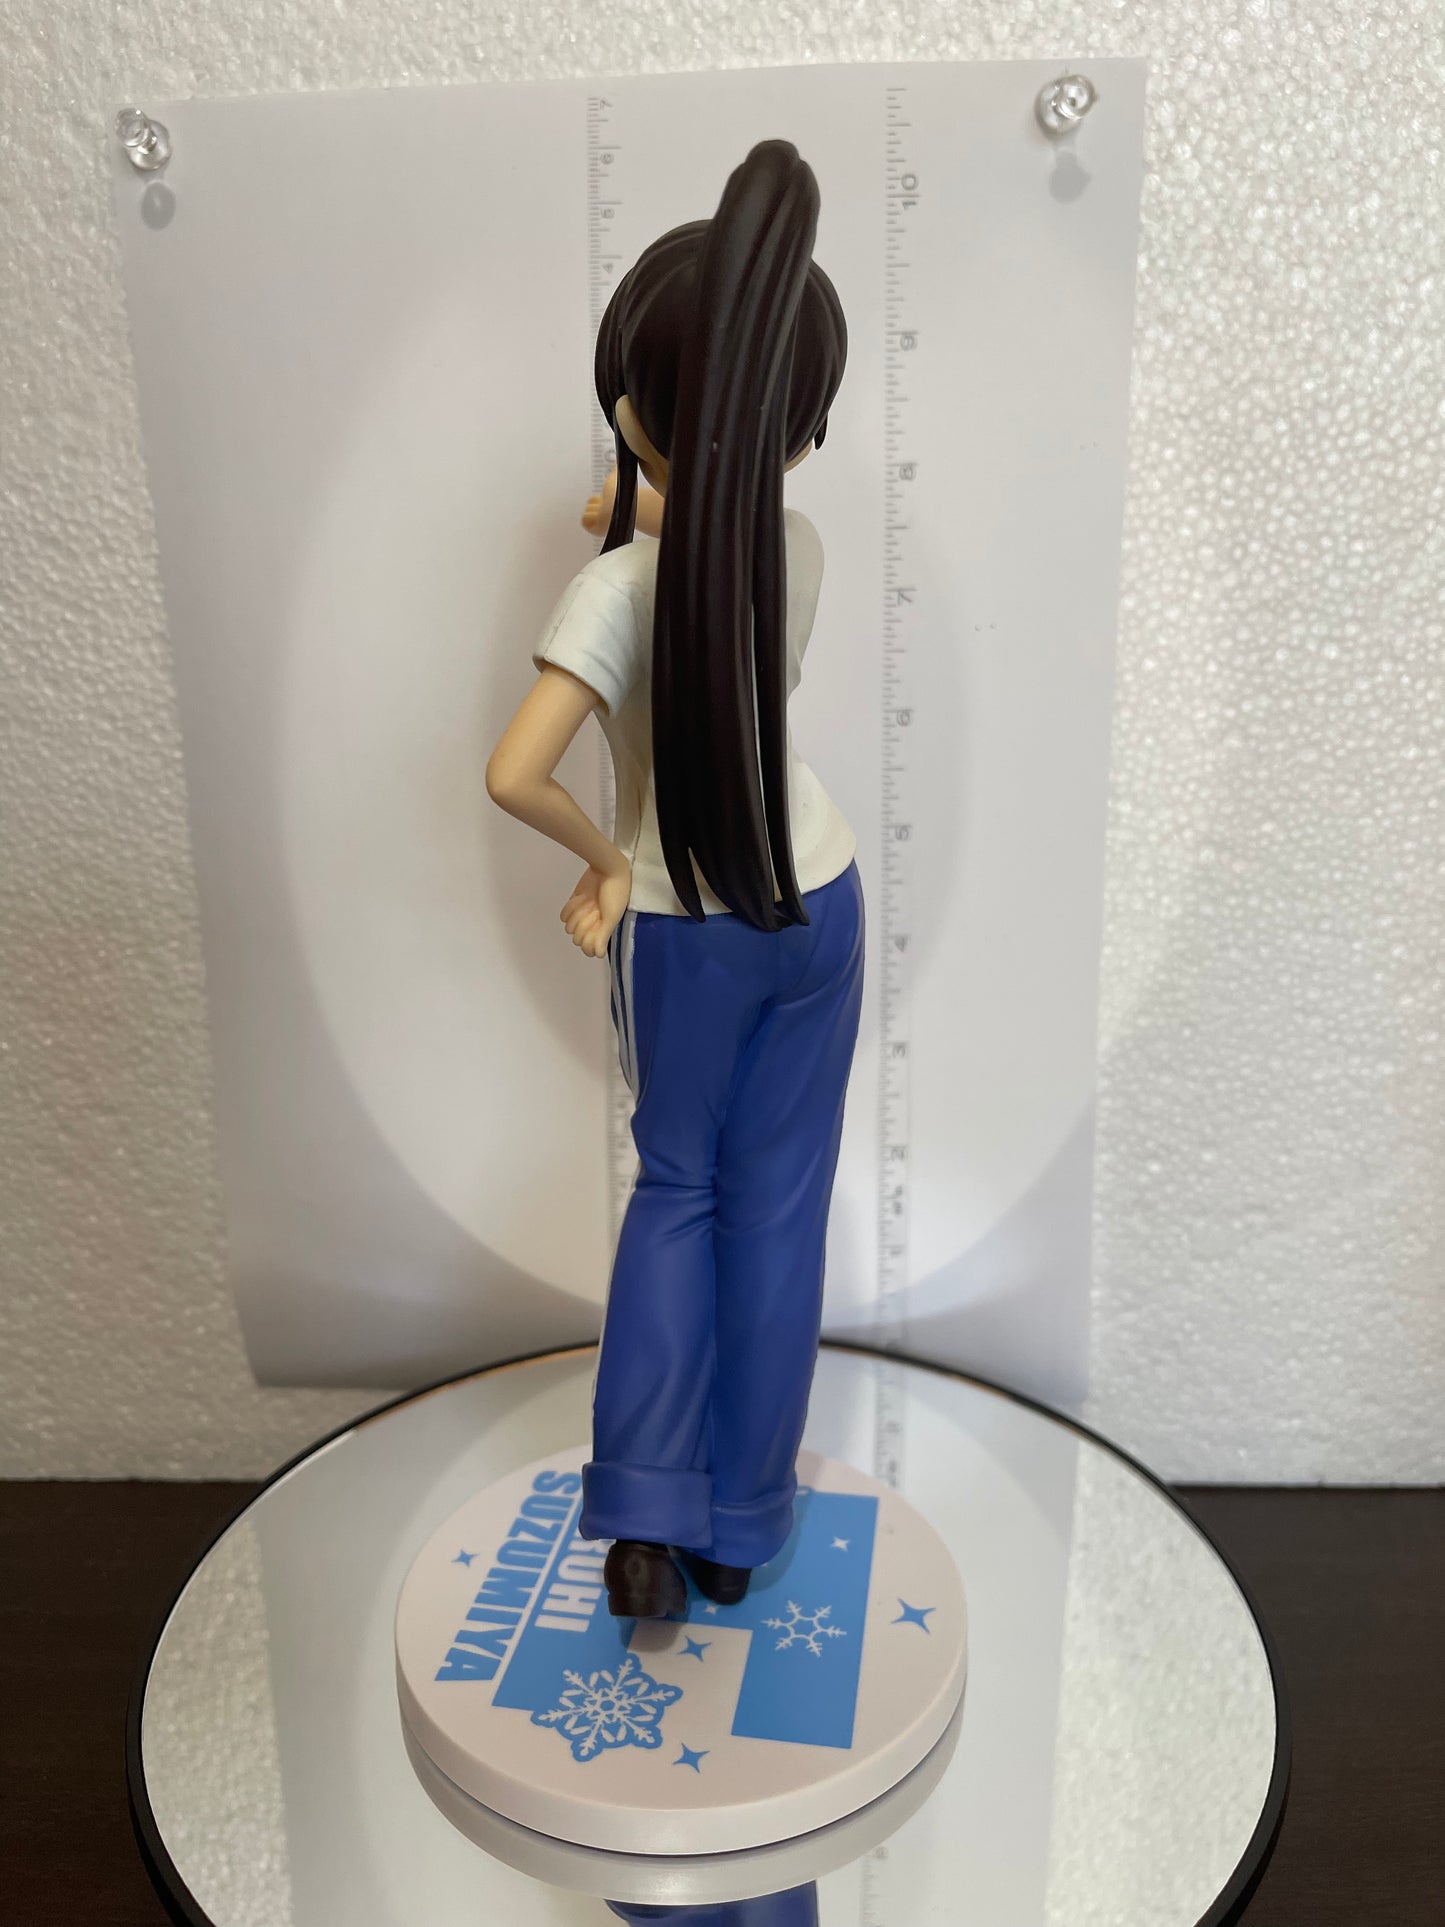 Melancholy of Suzumiya PREMIUM FIGURE Haruhi Suzumiya 23cm Sega Premium #035